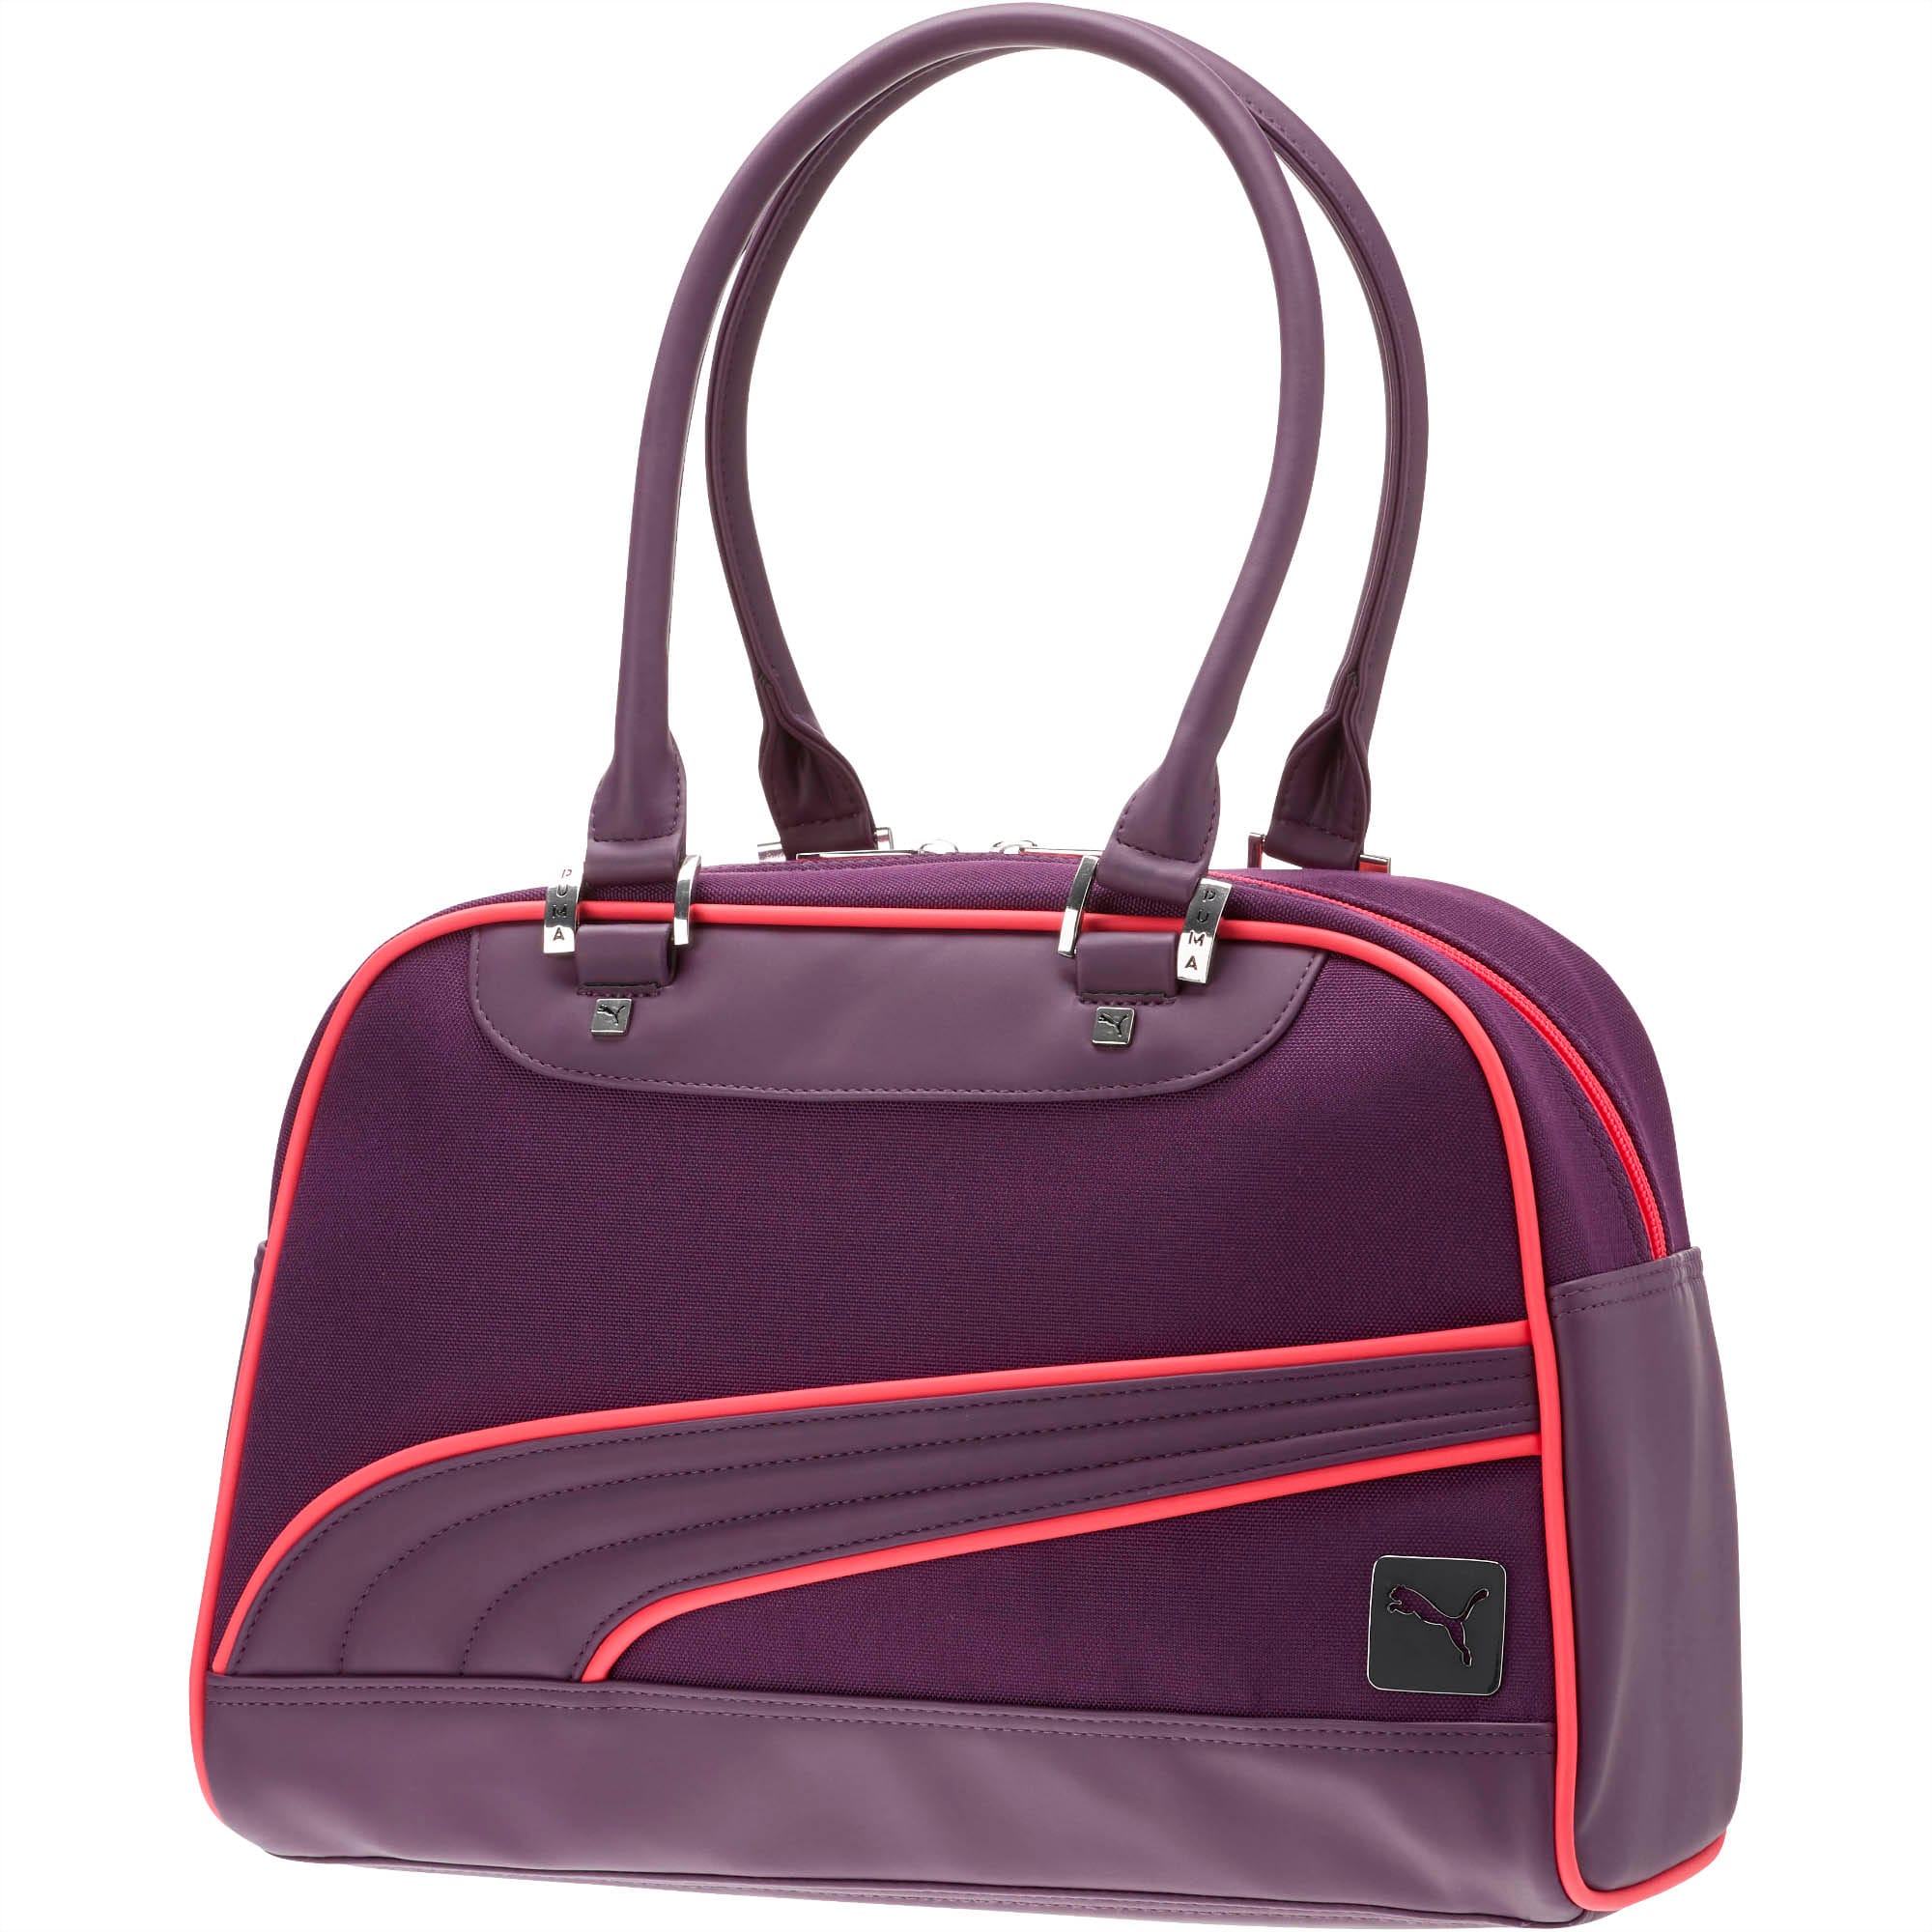 puma bmw handbag purple